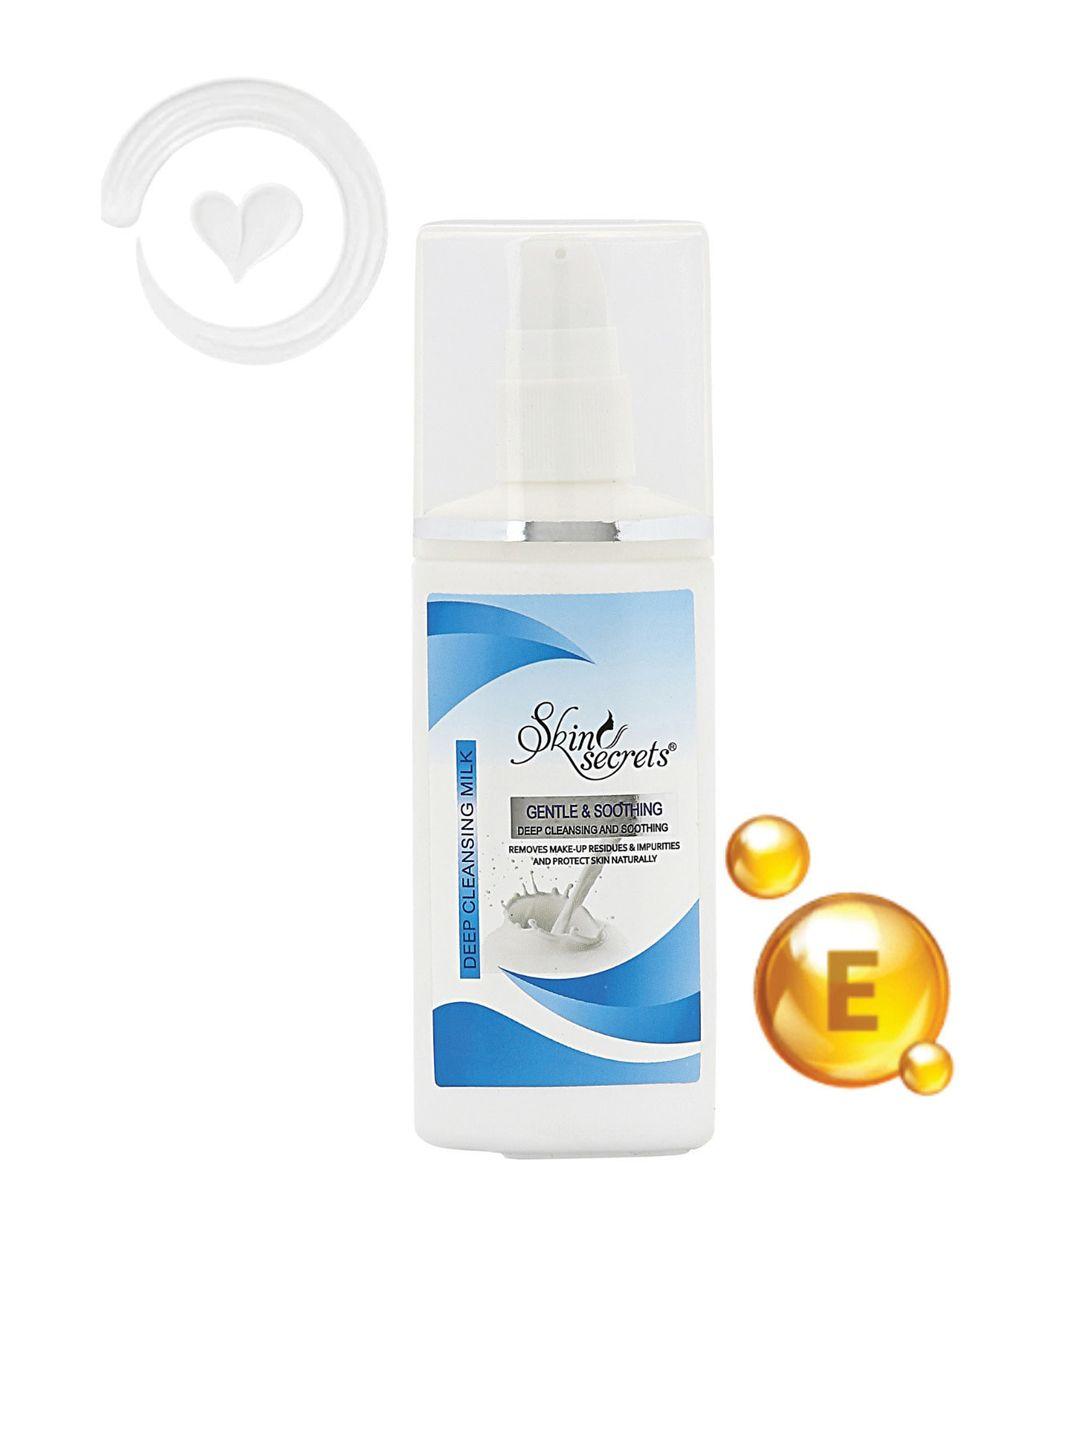 skin secrets gentle & soothing deep cleansing milk to remove makeup & impurities - 120ml